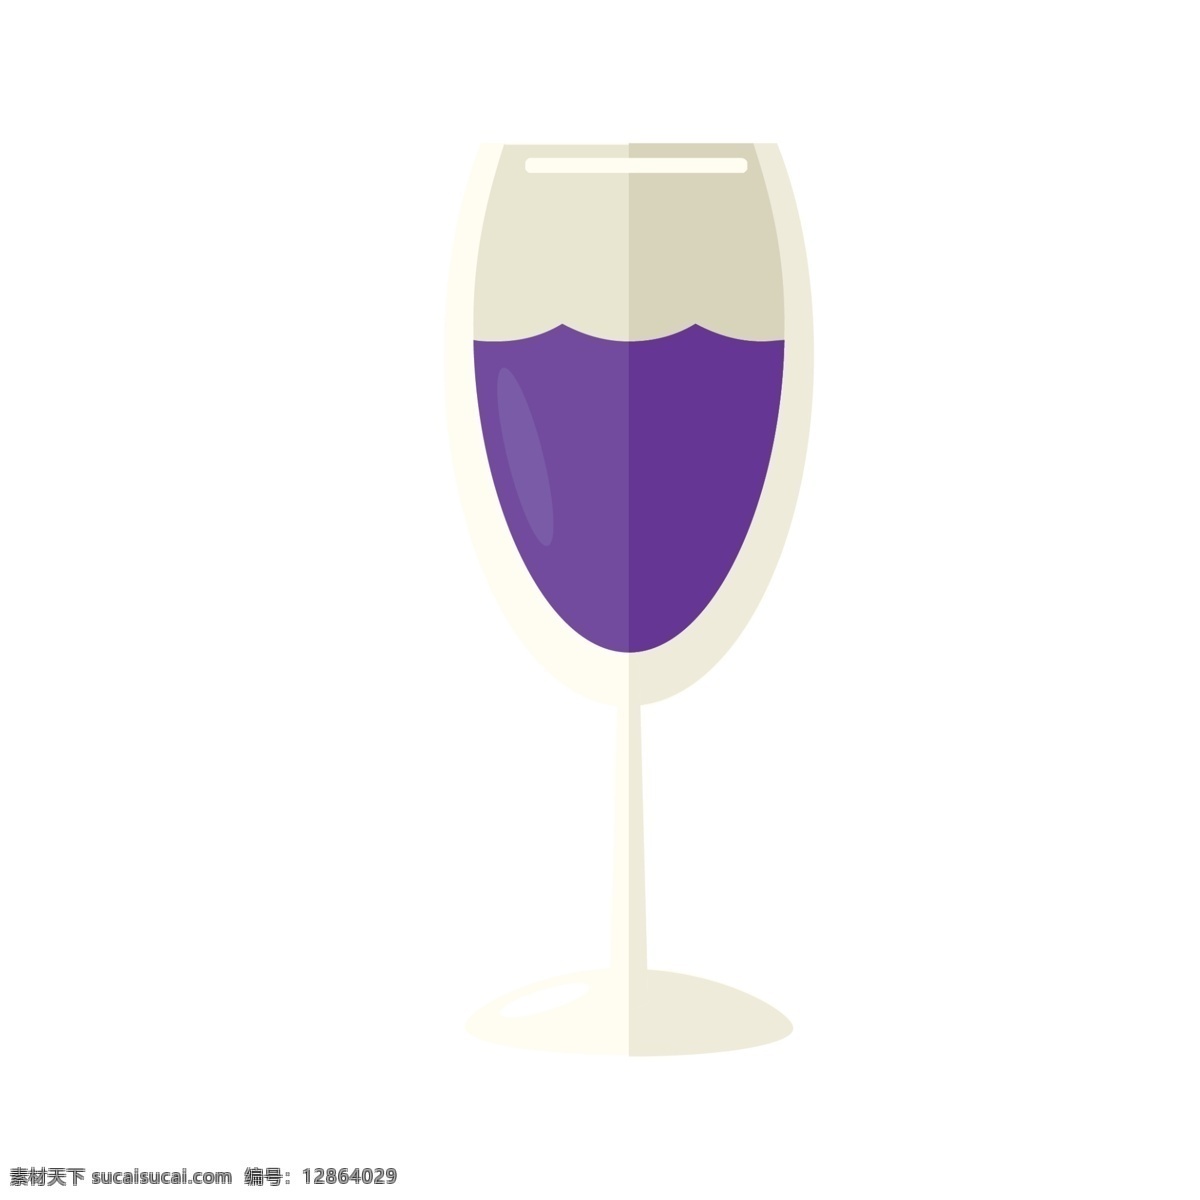 一杯 紫色 葡萄酒 免 抠 图 一杯葡萄酒 酒水饮料 卡通酒水 卡通饮料 酒水